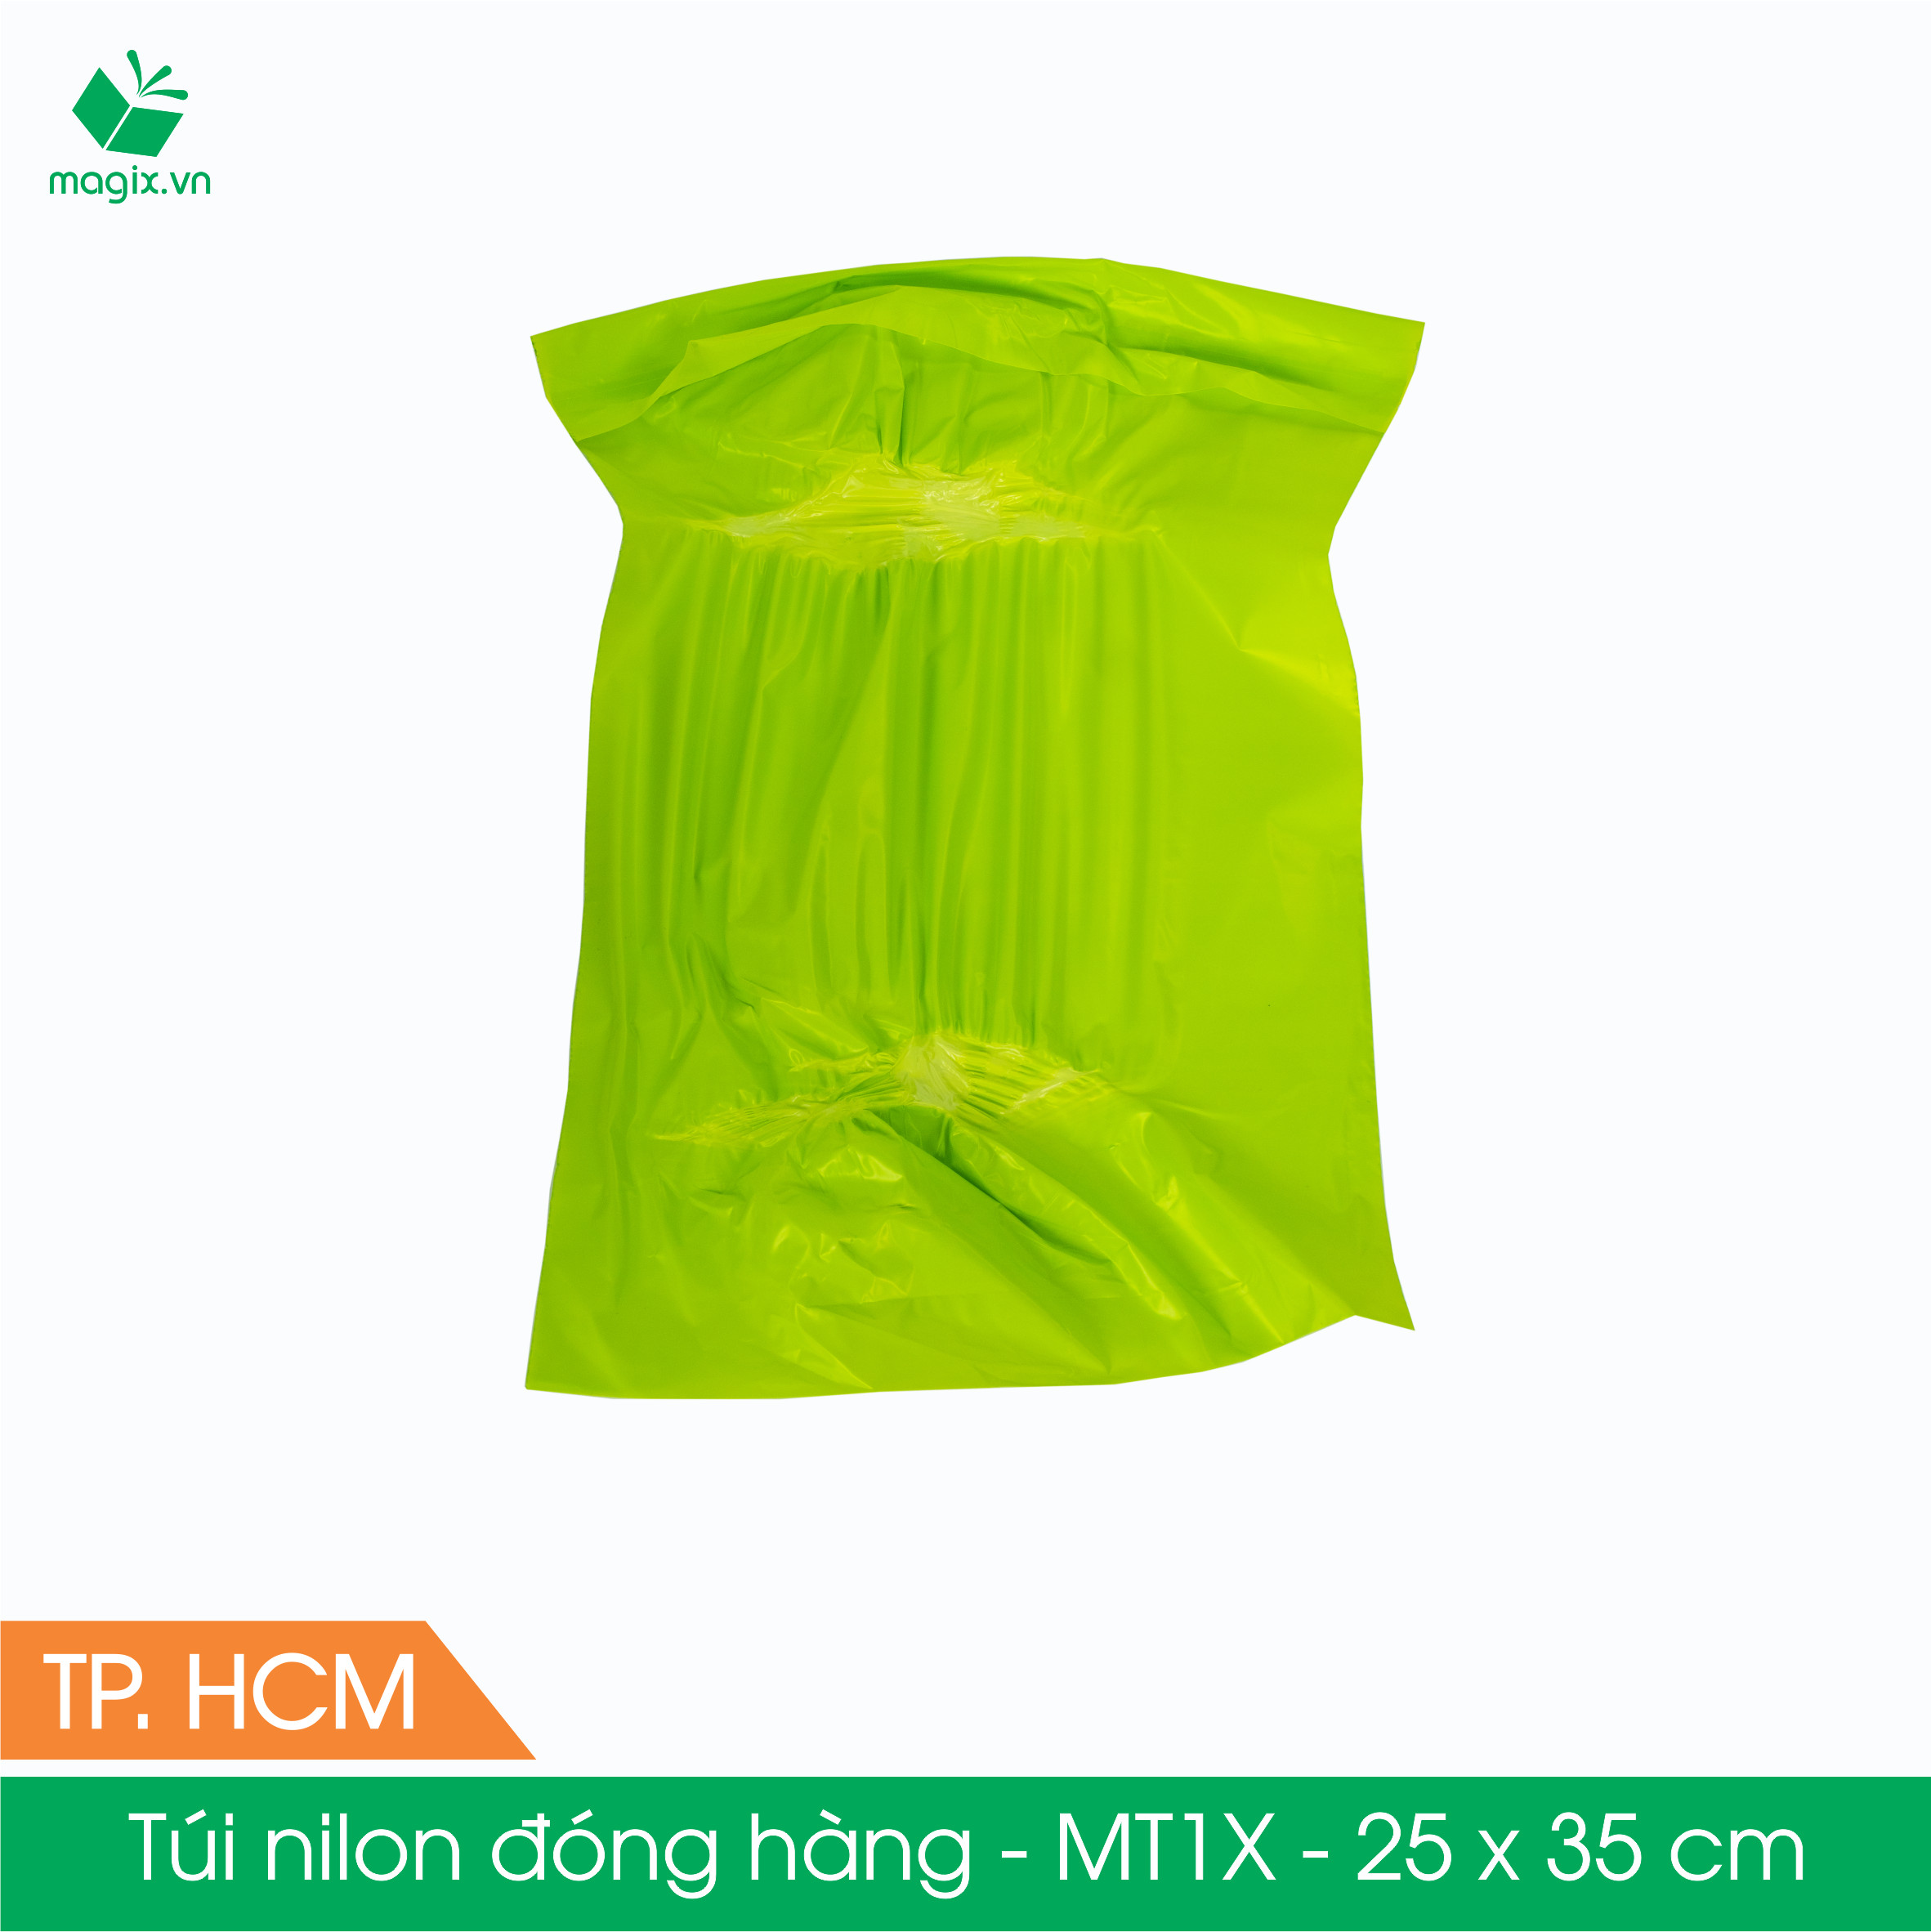 MT1X - 25x35 cm - Túi nilon gói hàng - 100 túi niêm phong đóng hàng màu xanh lá mạ